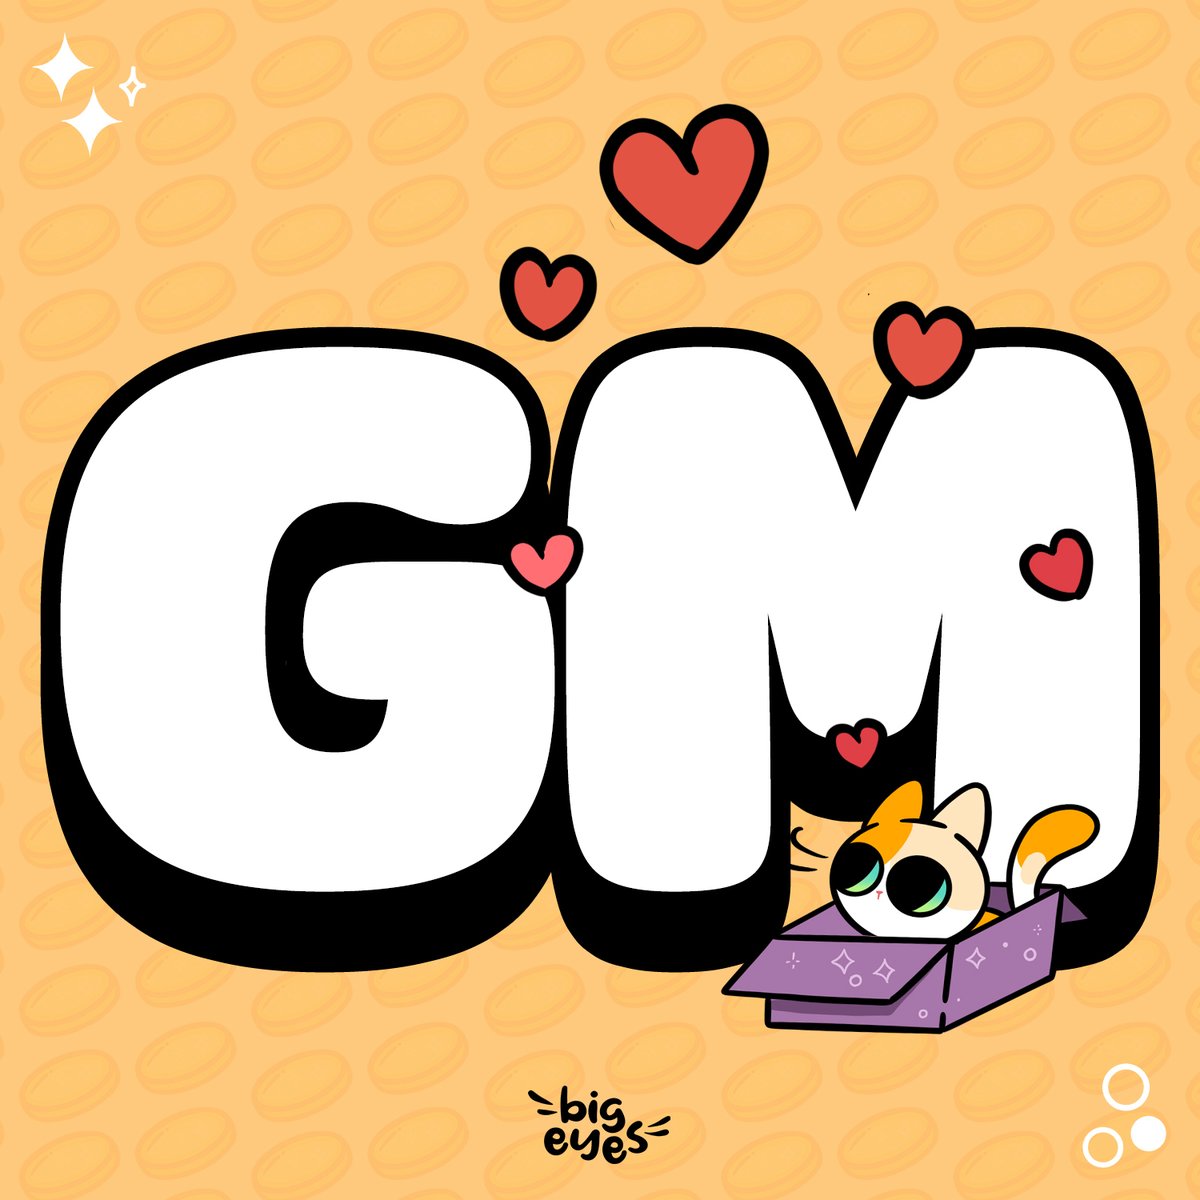 GM #CatCrew!😻